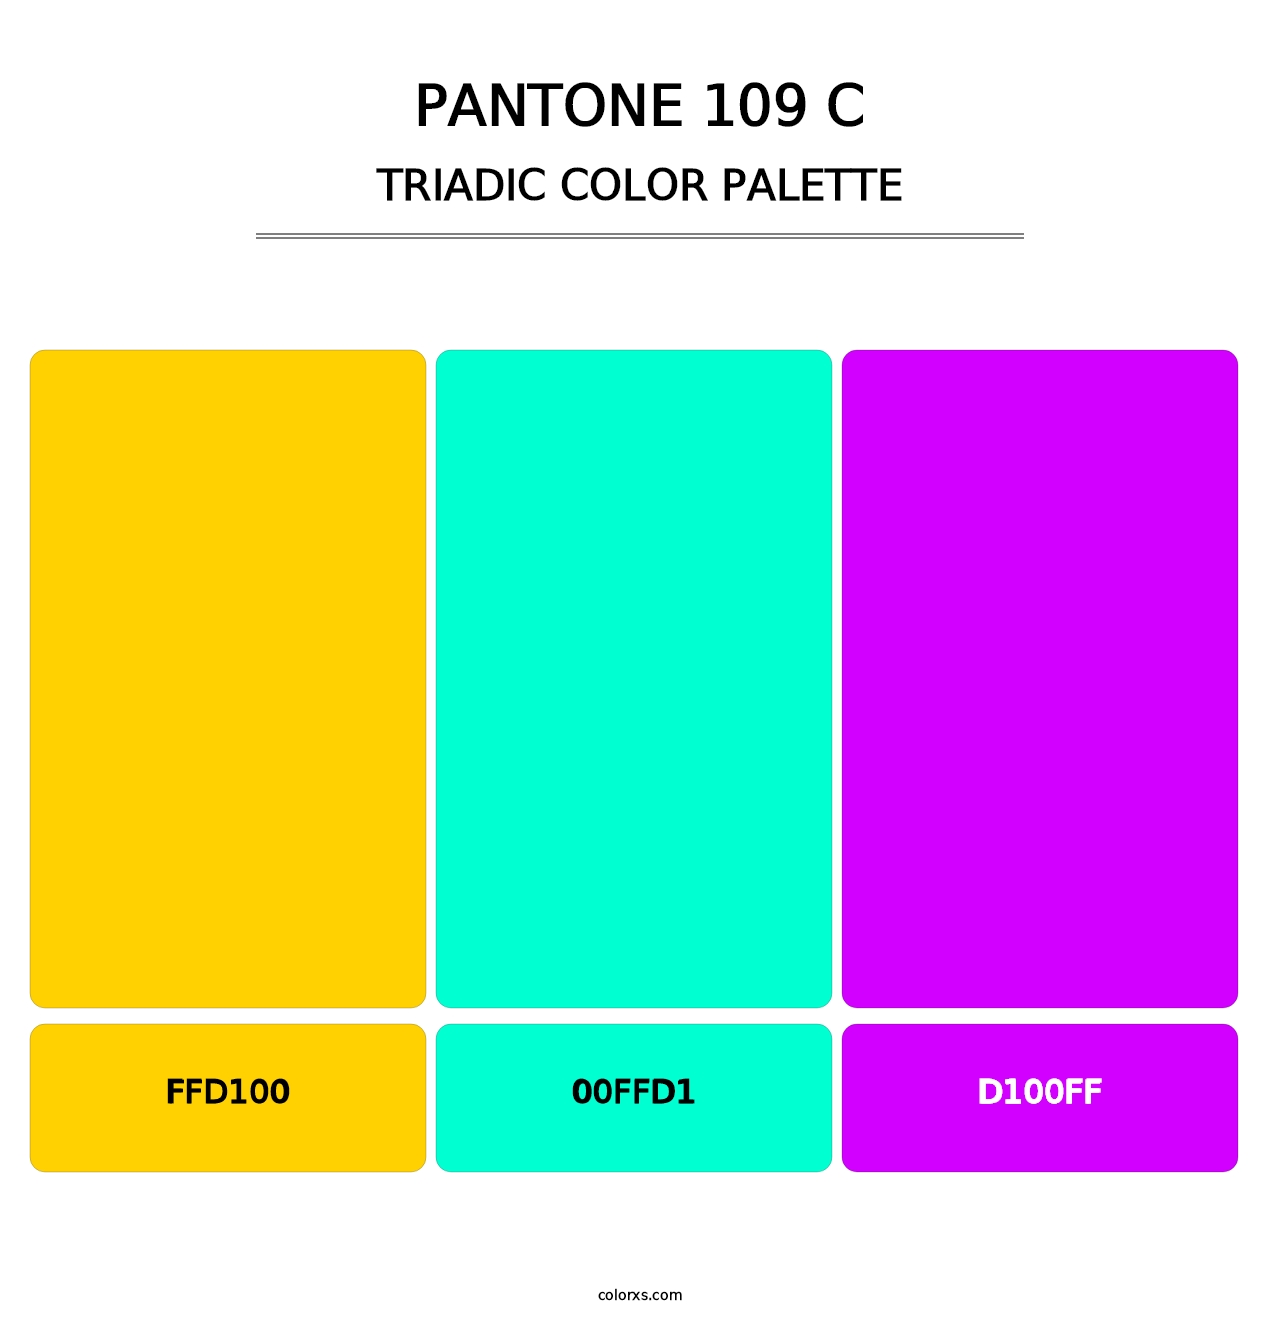 PANTONE 109 C - Triadic Color Palette